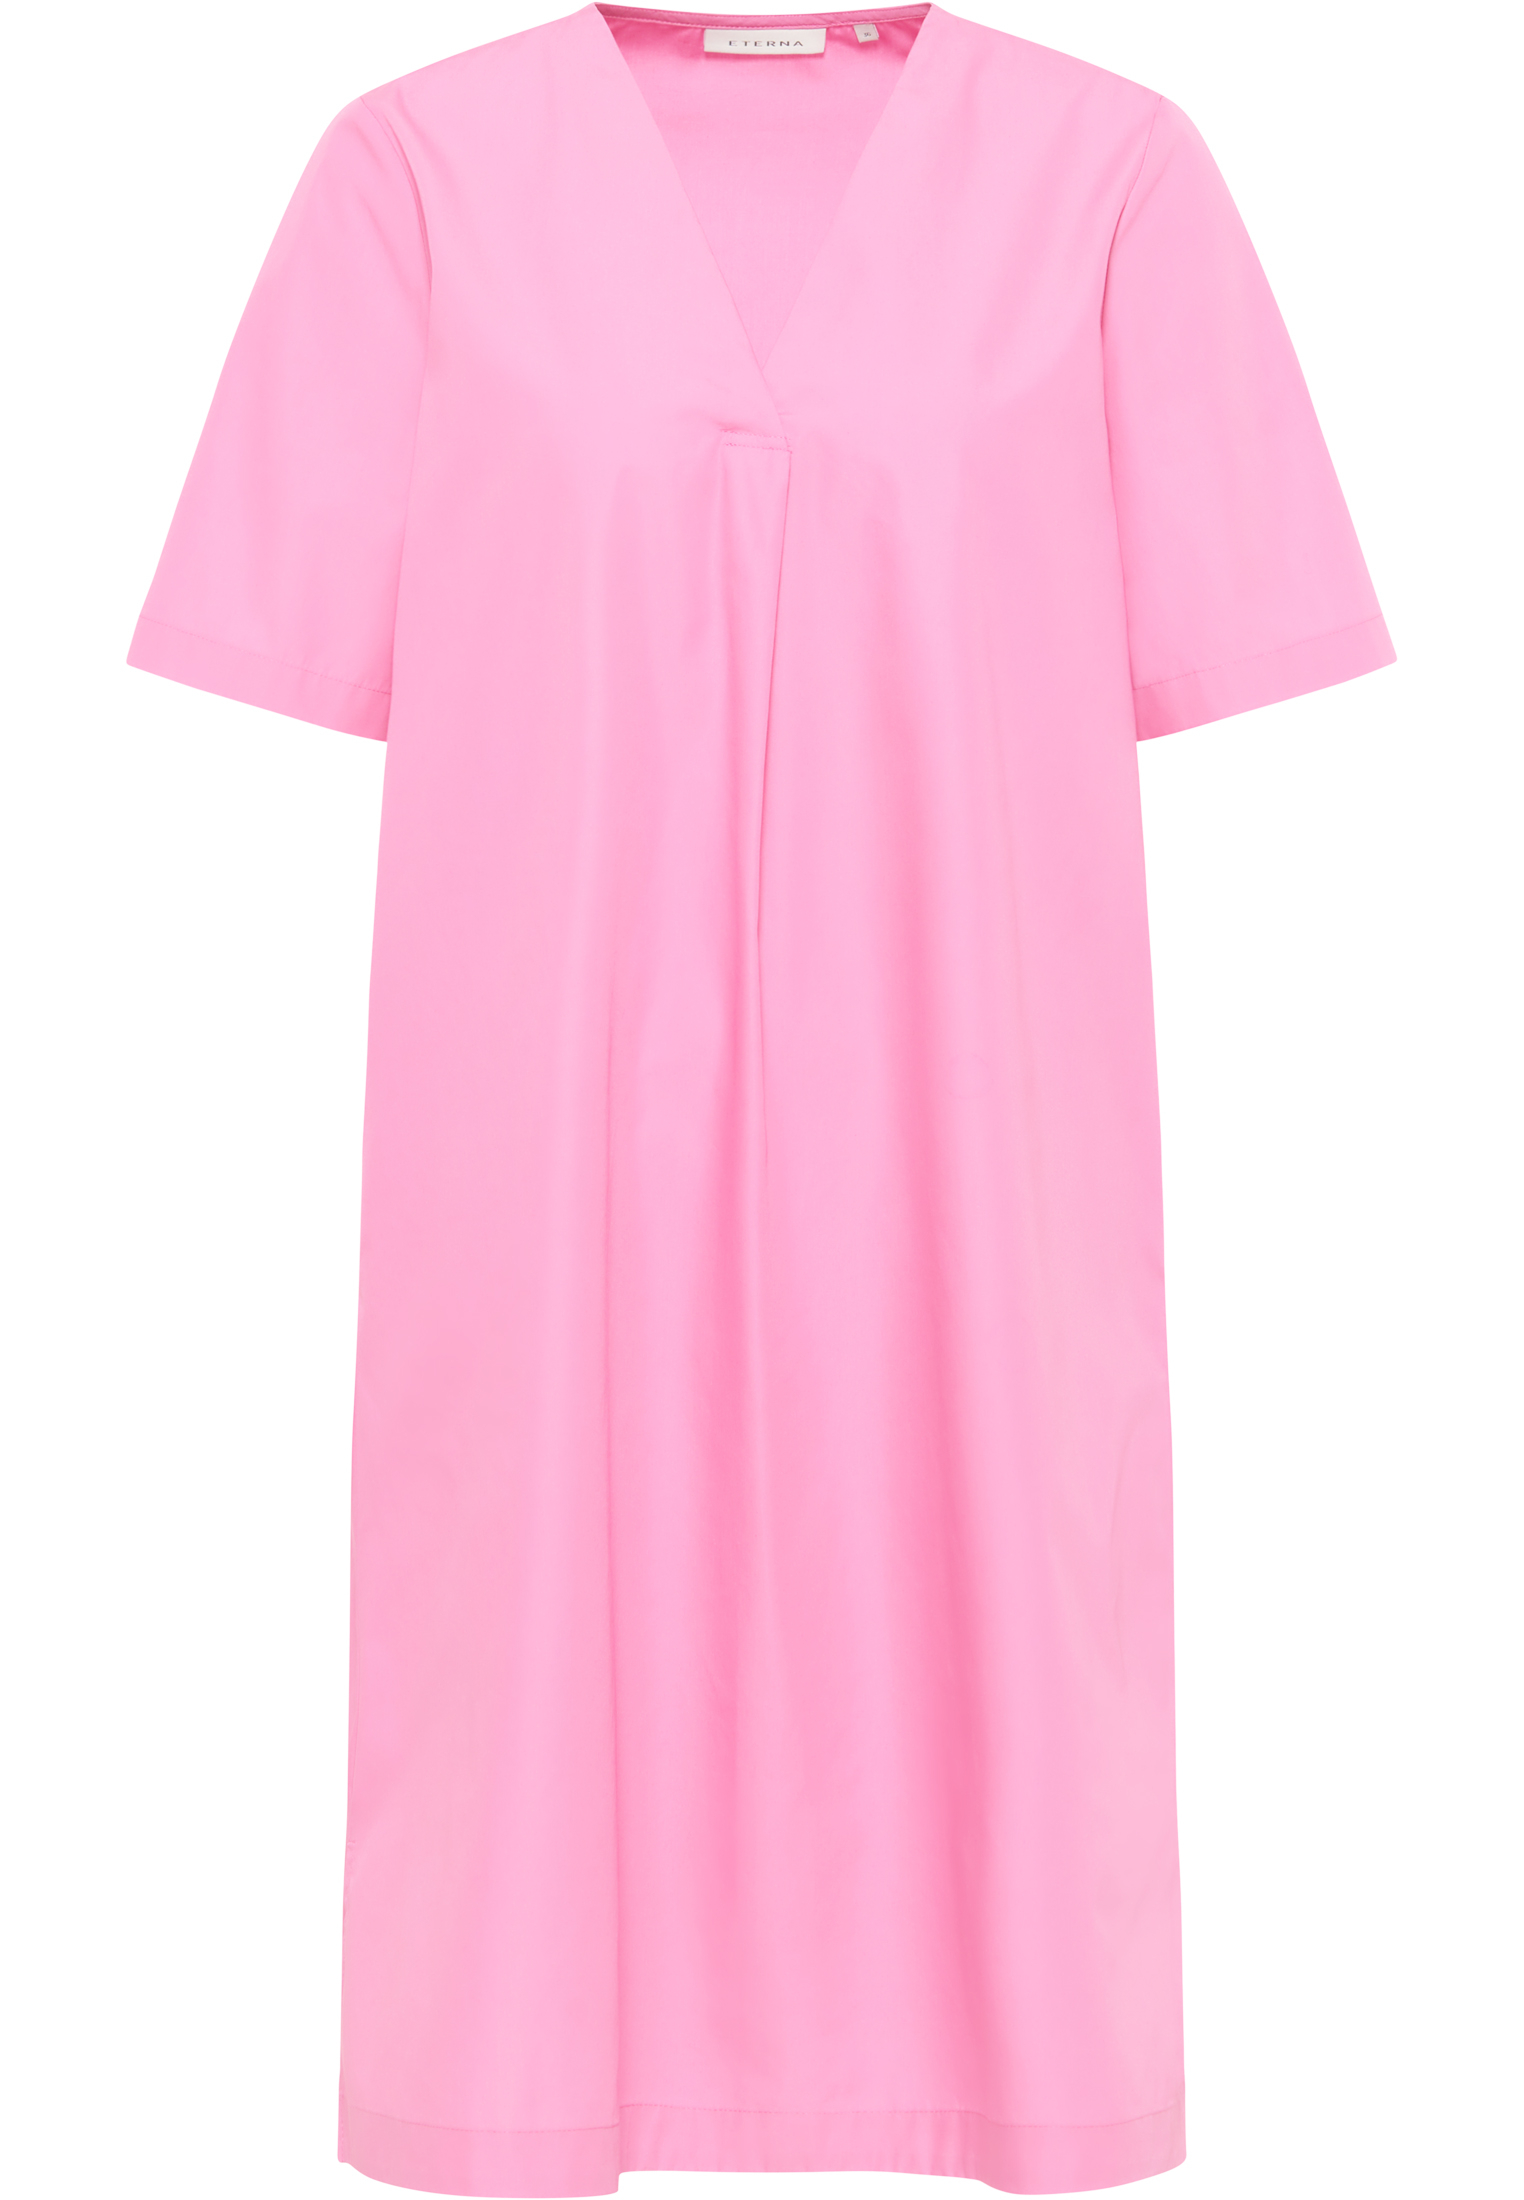 Blusenkleid in pink unifarben | | 2DR00211-15-21-34-1/2 pink Kurzarm 34 | 